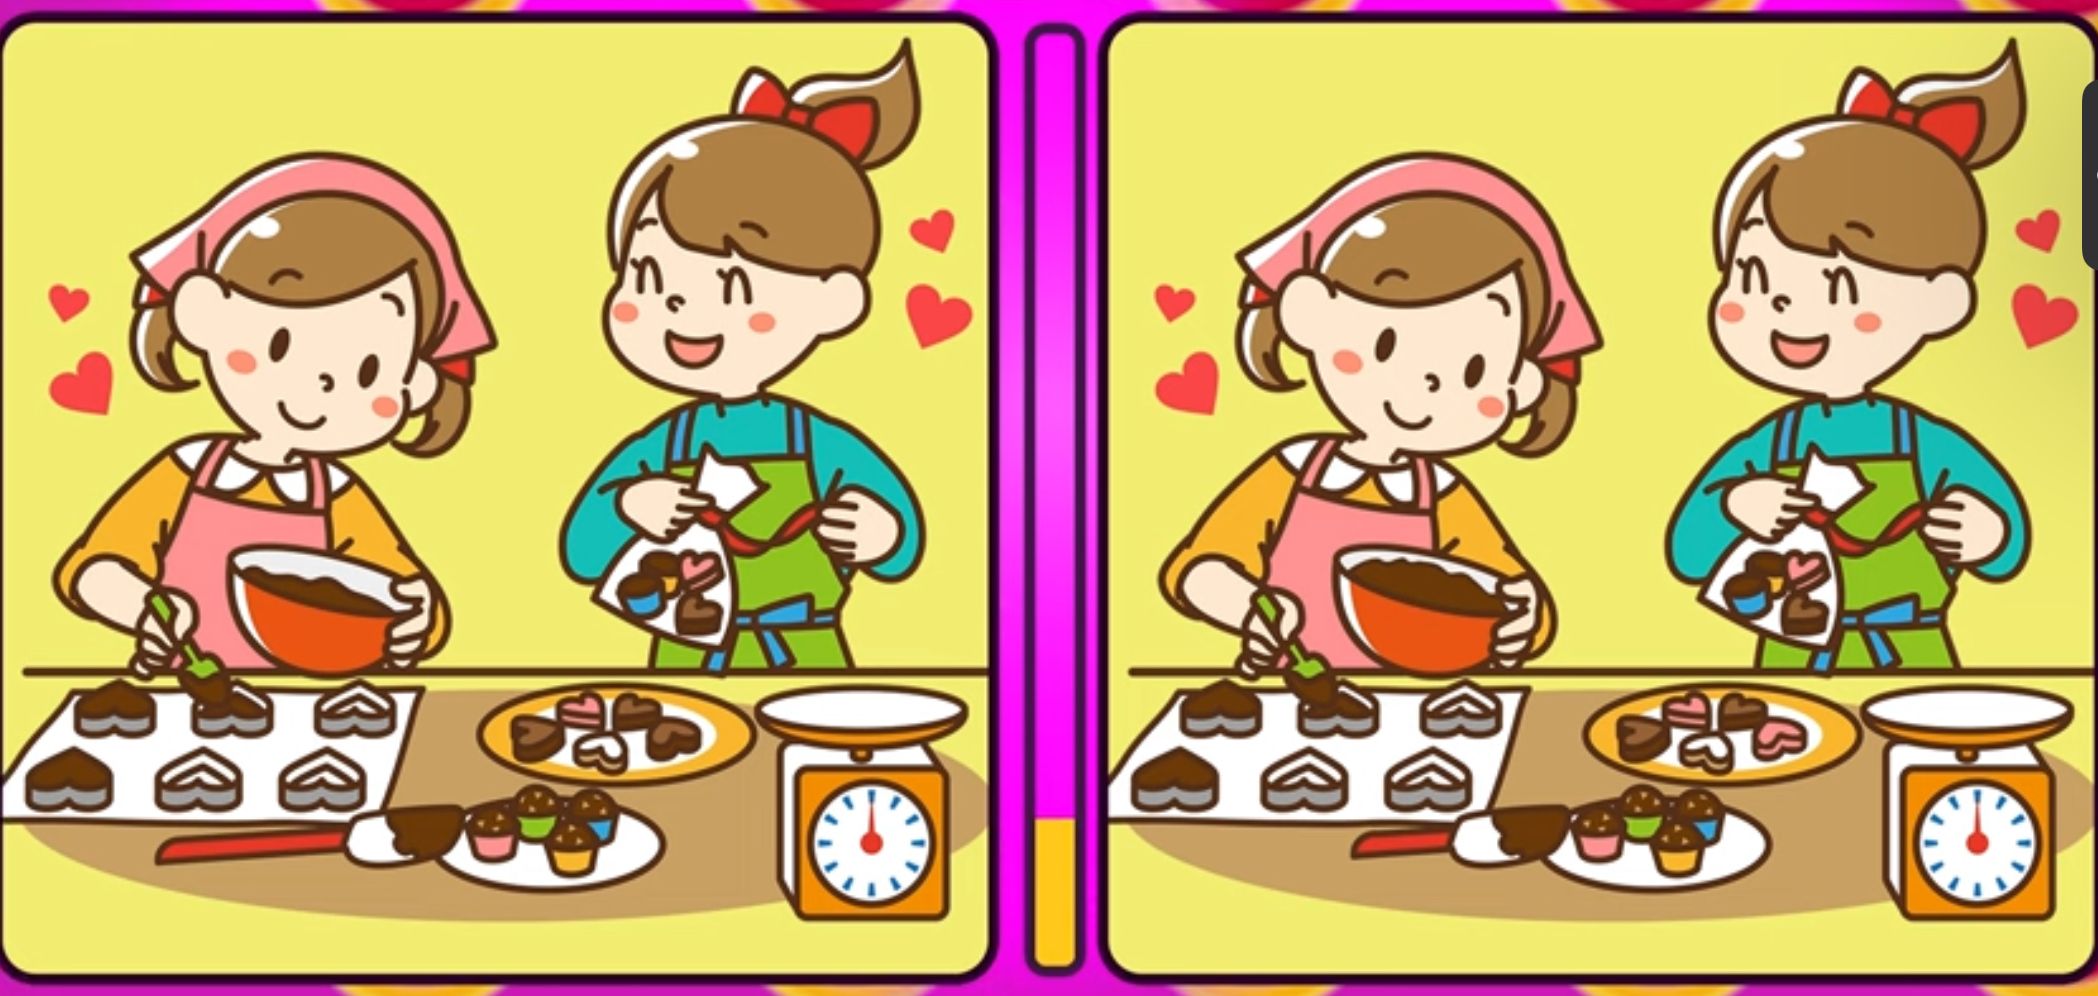 Dalam tes IQ kali ini, Kamu akan ditantang untuk menemukan tiga perbedaan pada gambar dua wanita yang sedang membuat kue. 